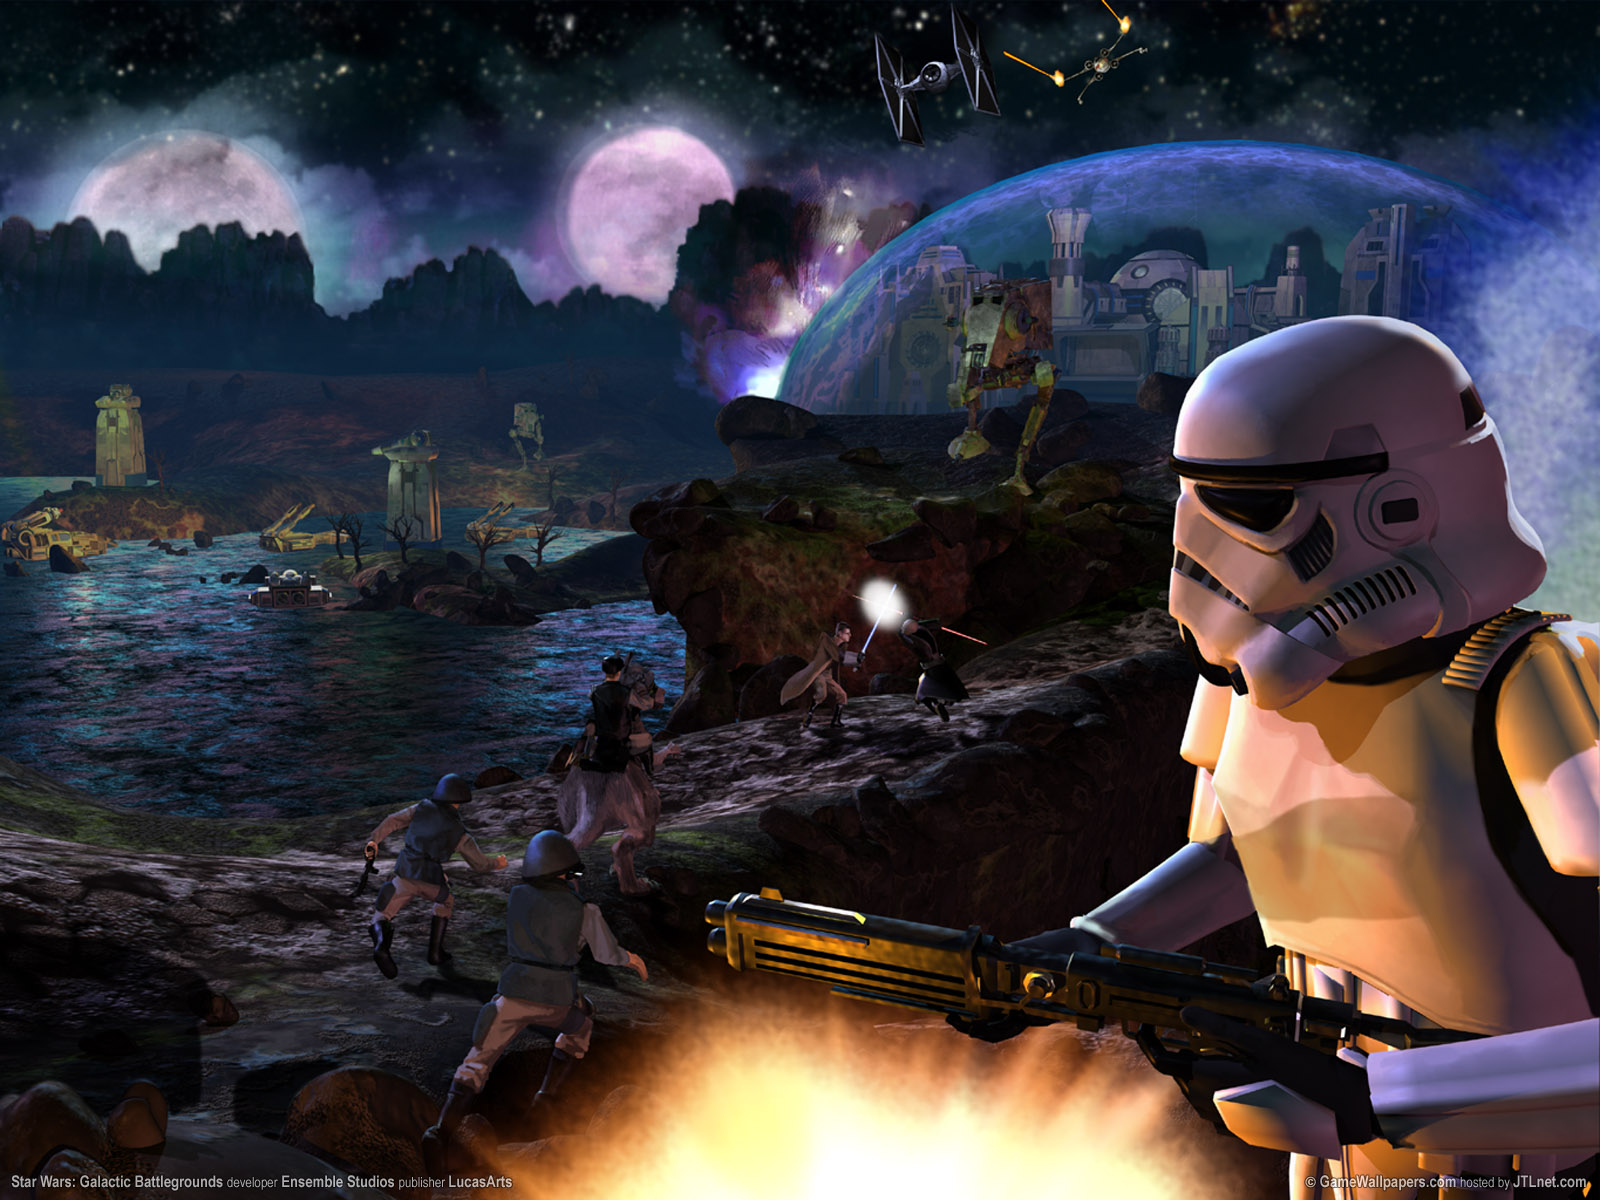 fondo de pantalla de star wars galaxy,juego de acción y aventura,juego de pc,cg artwork,juegos,juego de disparos